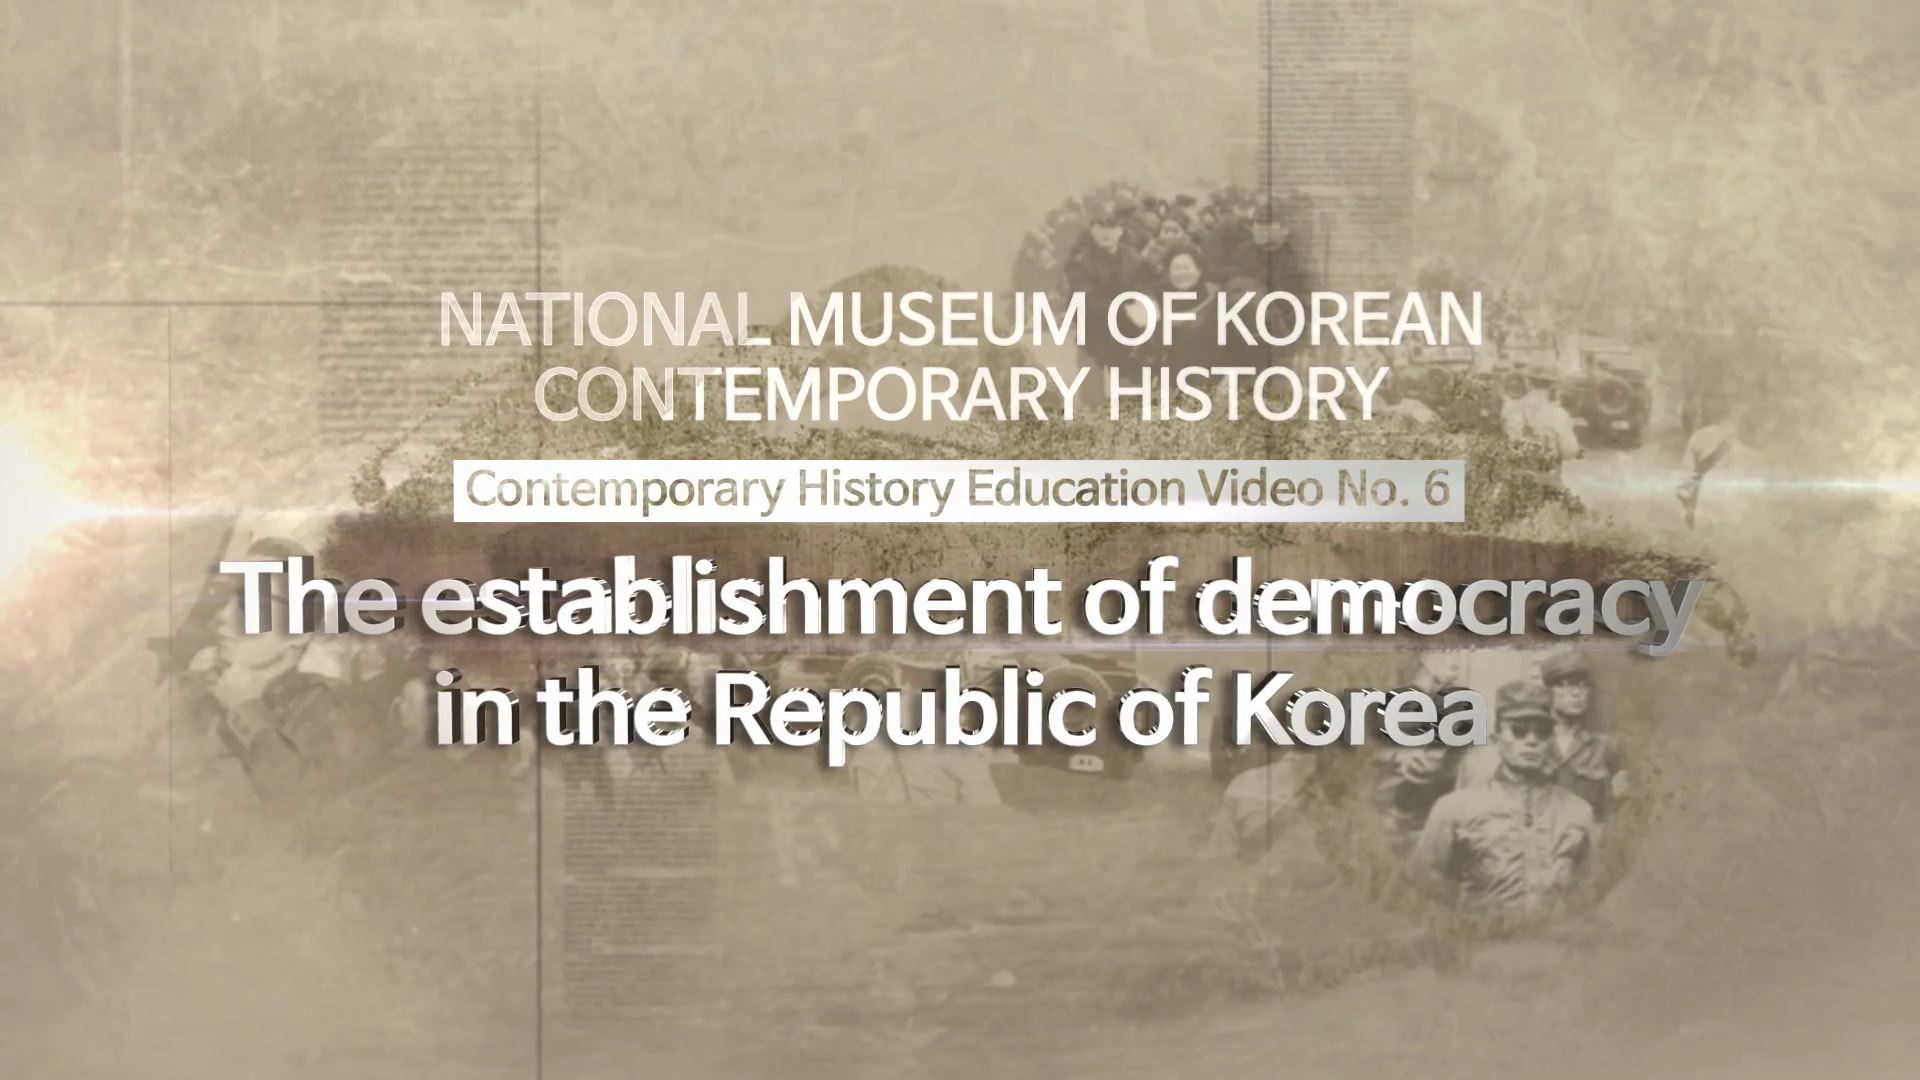 대한민국 민주주의의 확립